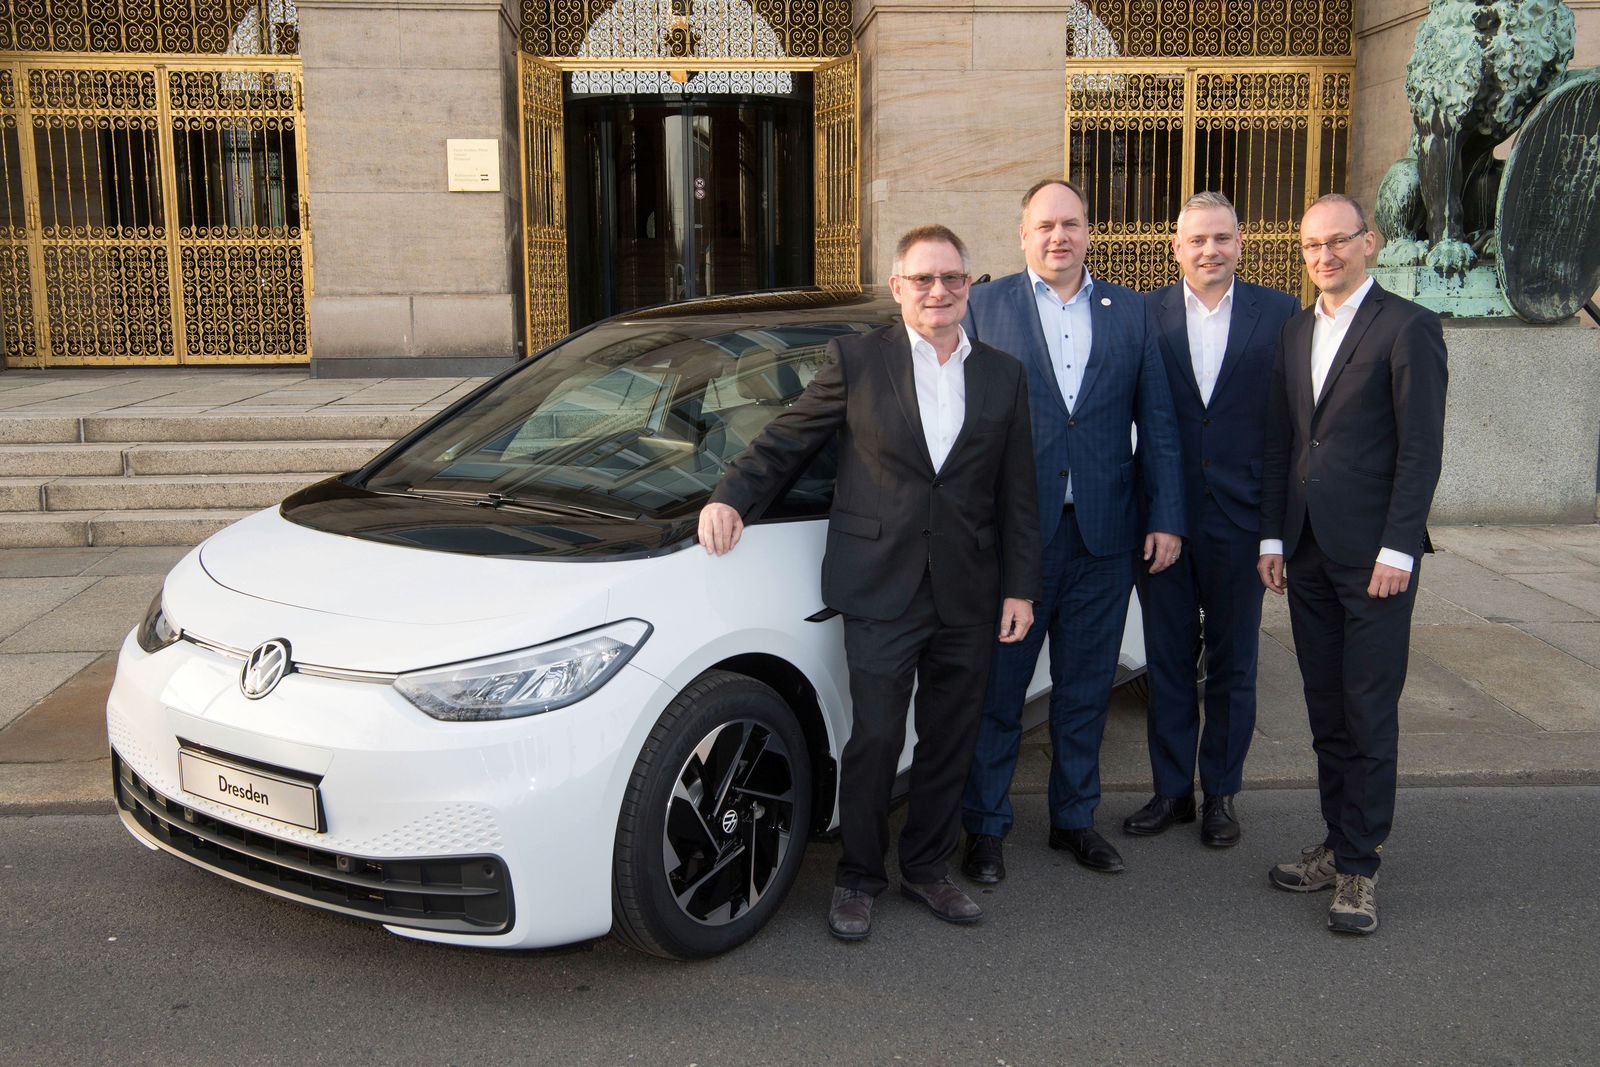 Volkswagen Sachsen und Dresden verlängern Partnerschaft zu Elektromobilität und Digitalisierung